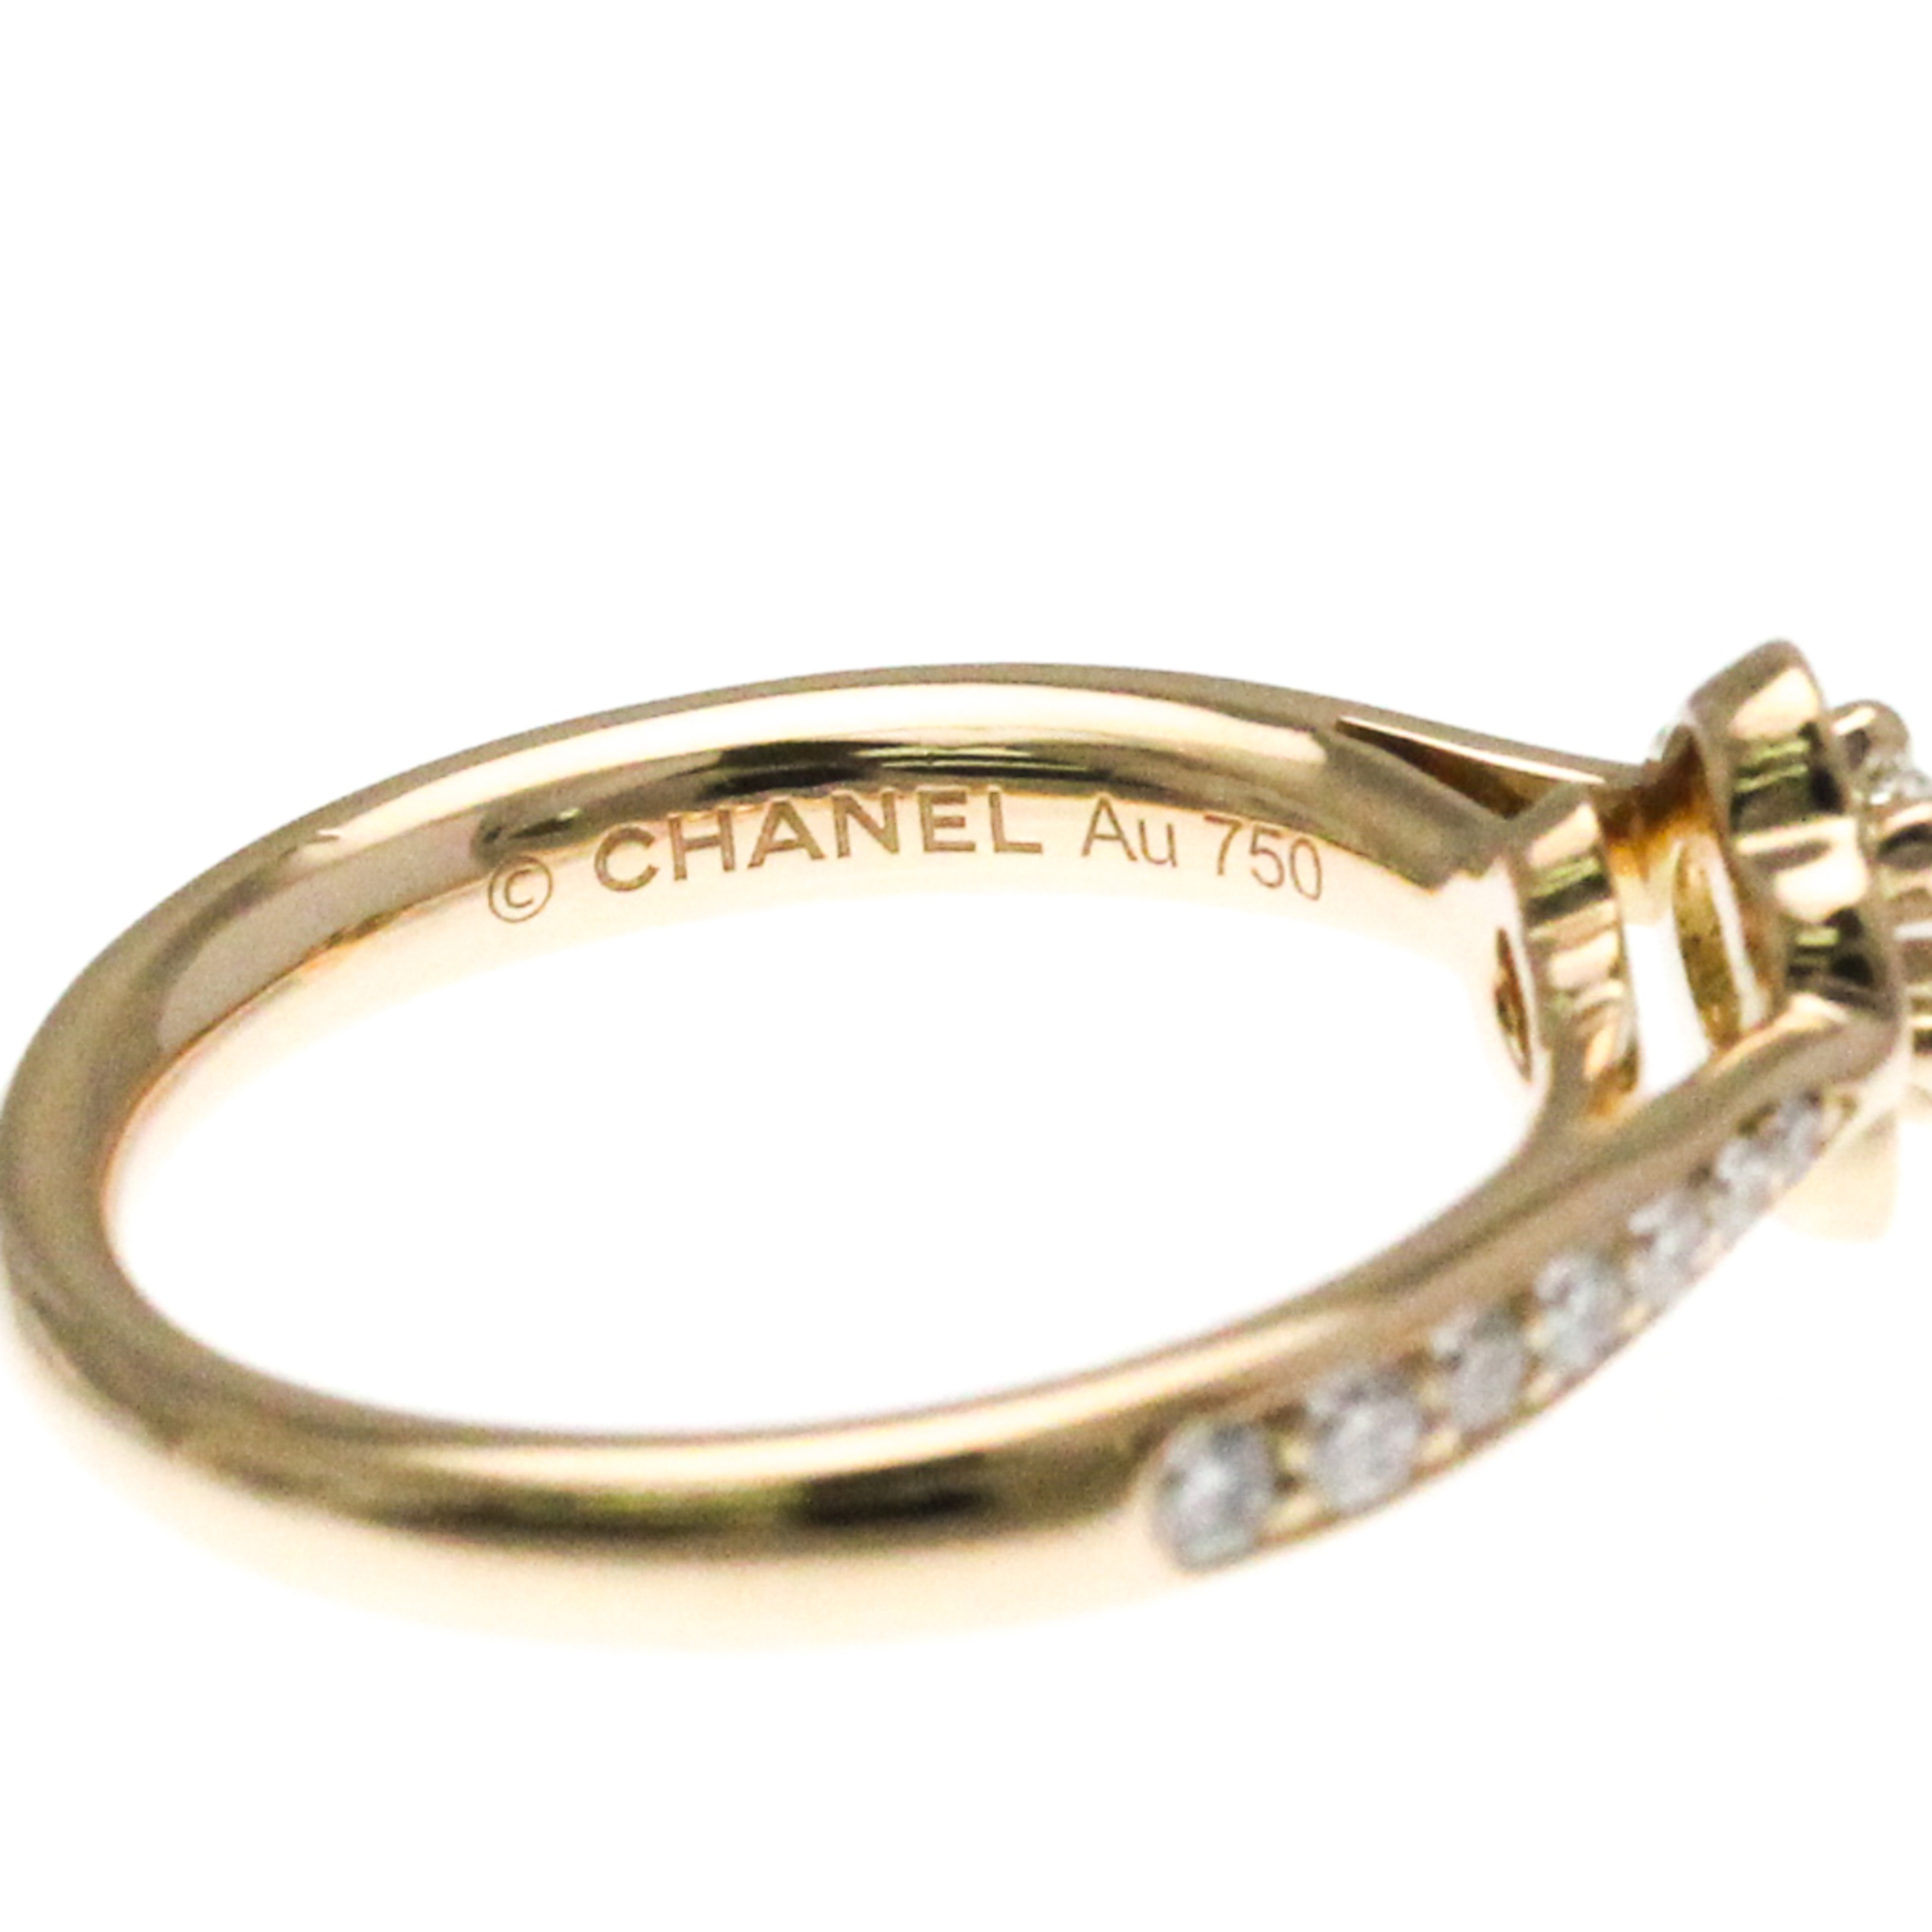 シャネル(Chanel) カメリア エンゲージメントリング K18ピンクゴールド(K18PG) ファッション ダイヤモンド バンドリング ピンクゴールド(PG)